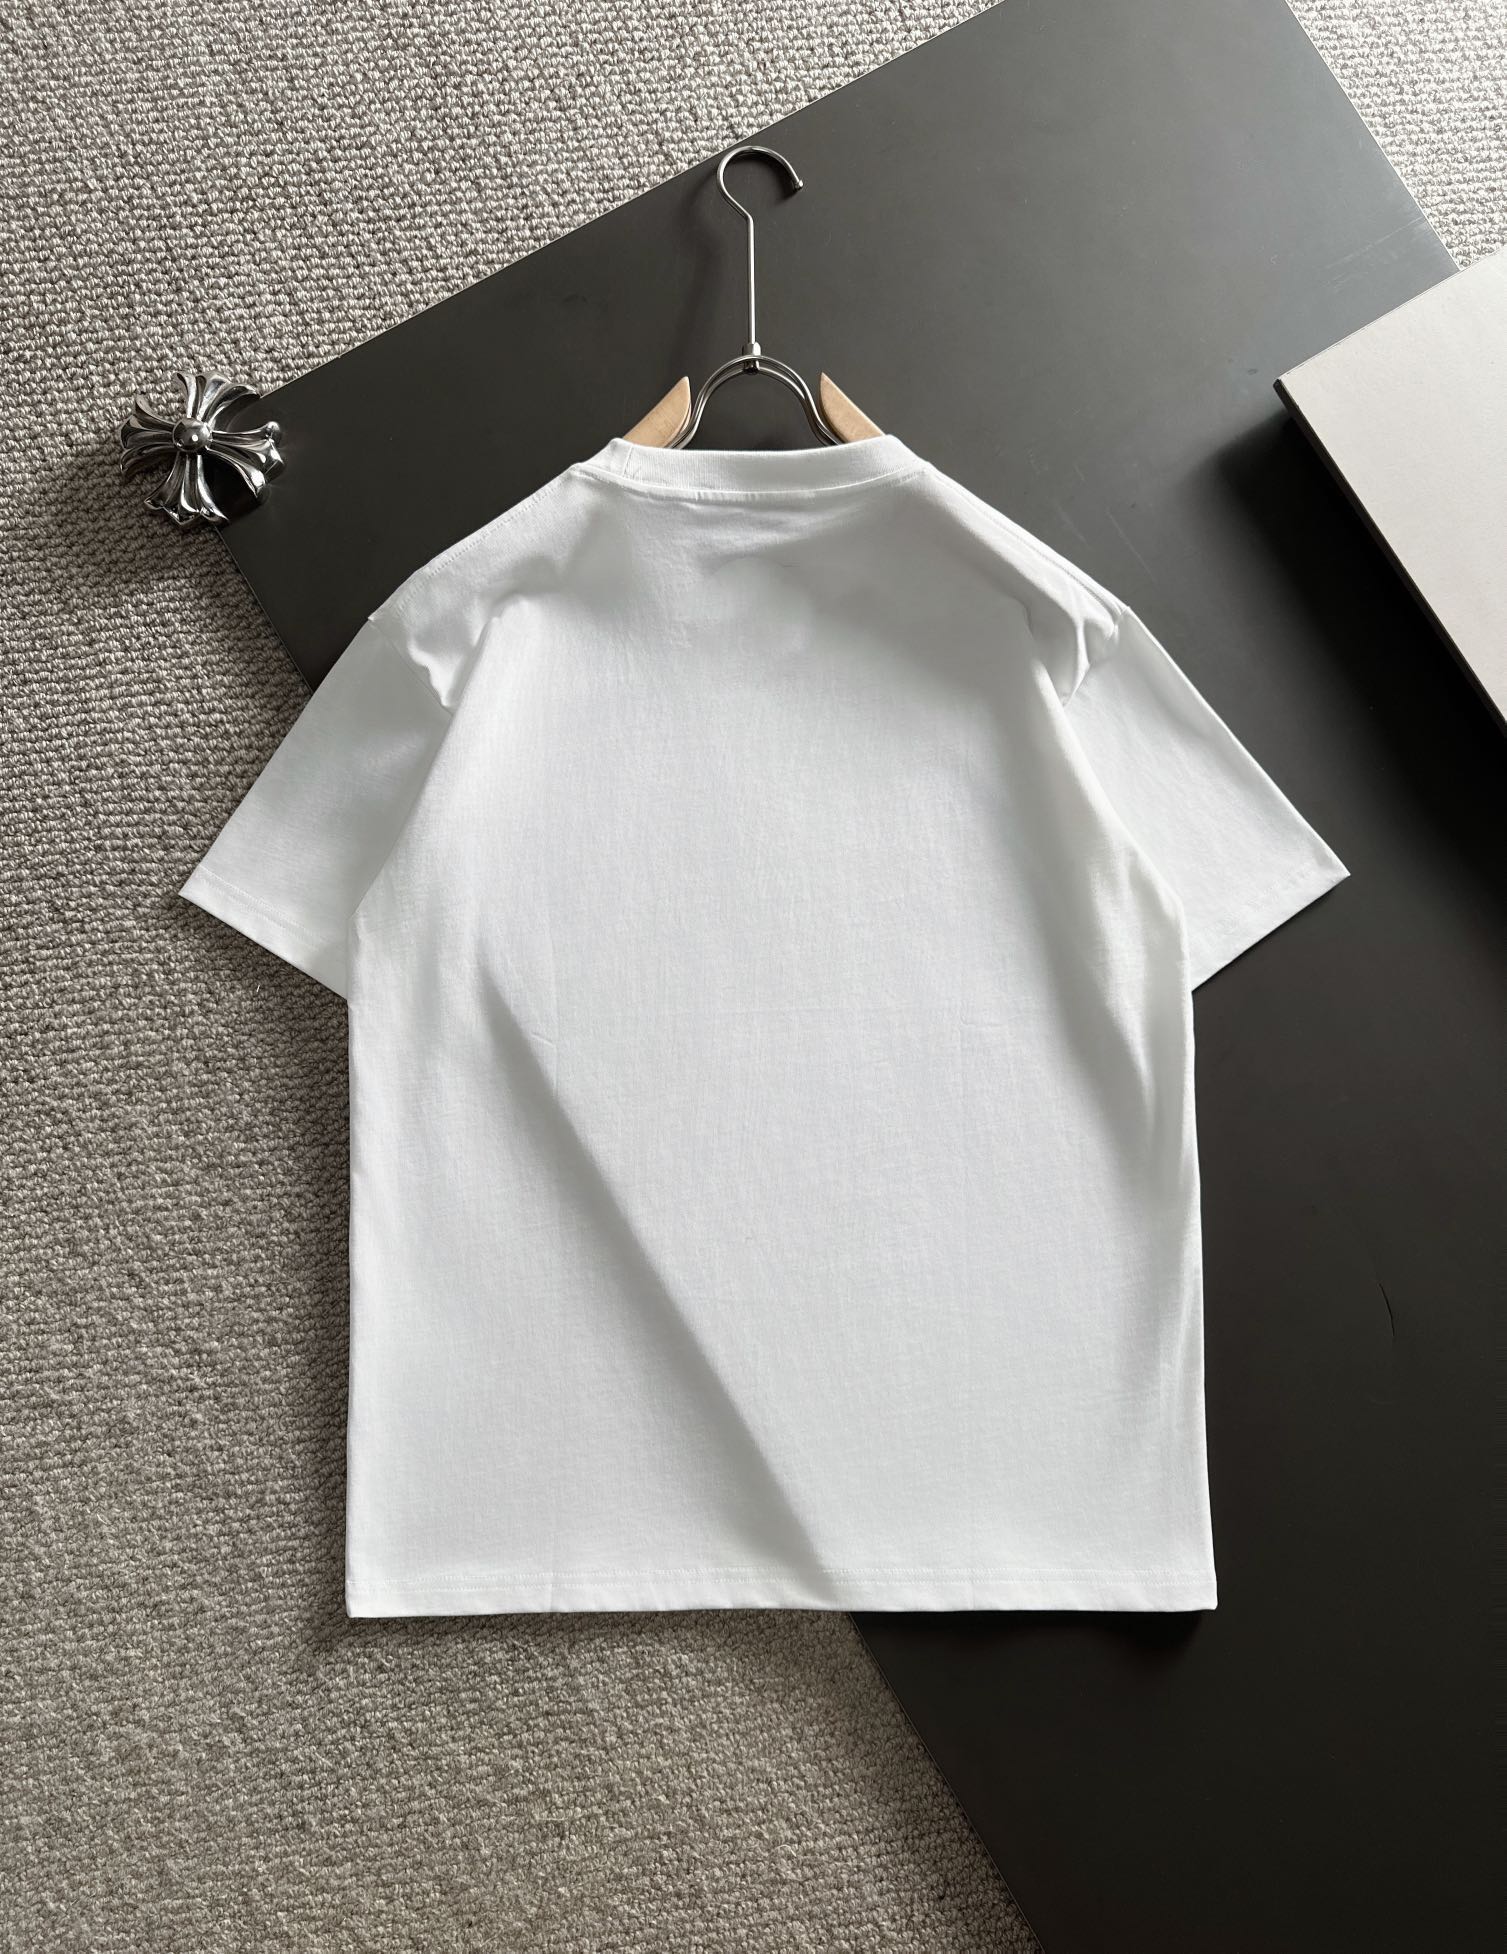 dior ステューシー tシャツスーパーコピー 短袖 爆買い品質保証 トップス 純綿 シンプル 春新販売 男女兼用 ホワイト_7